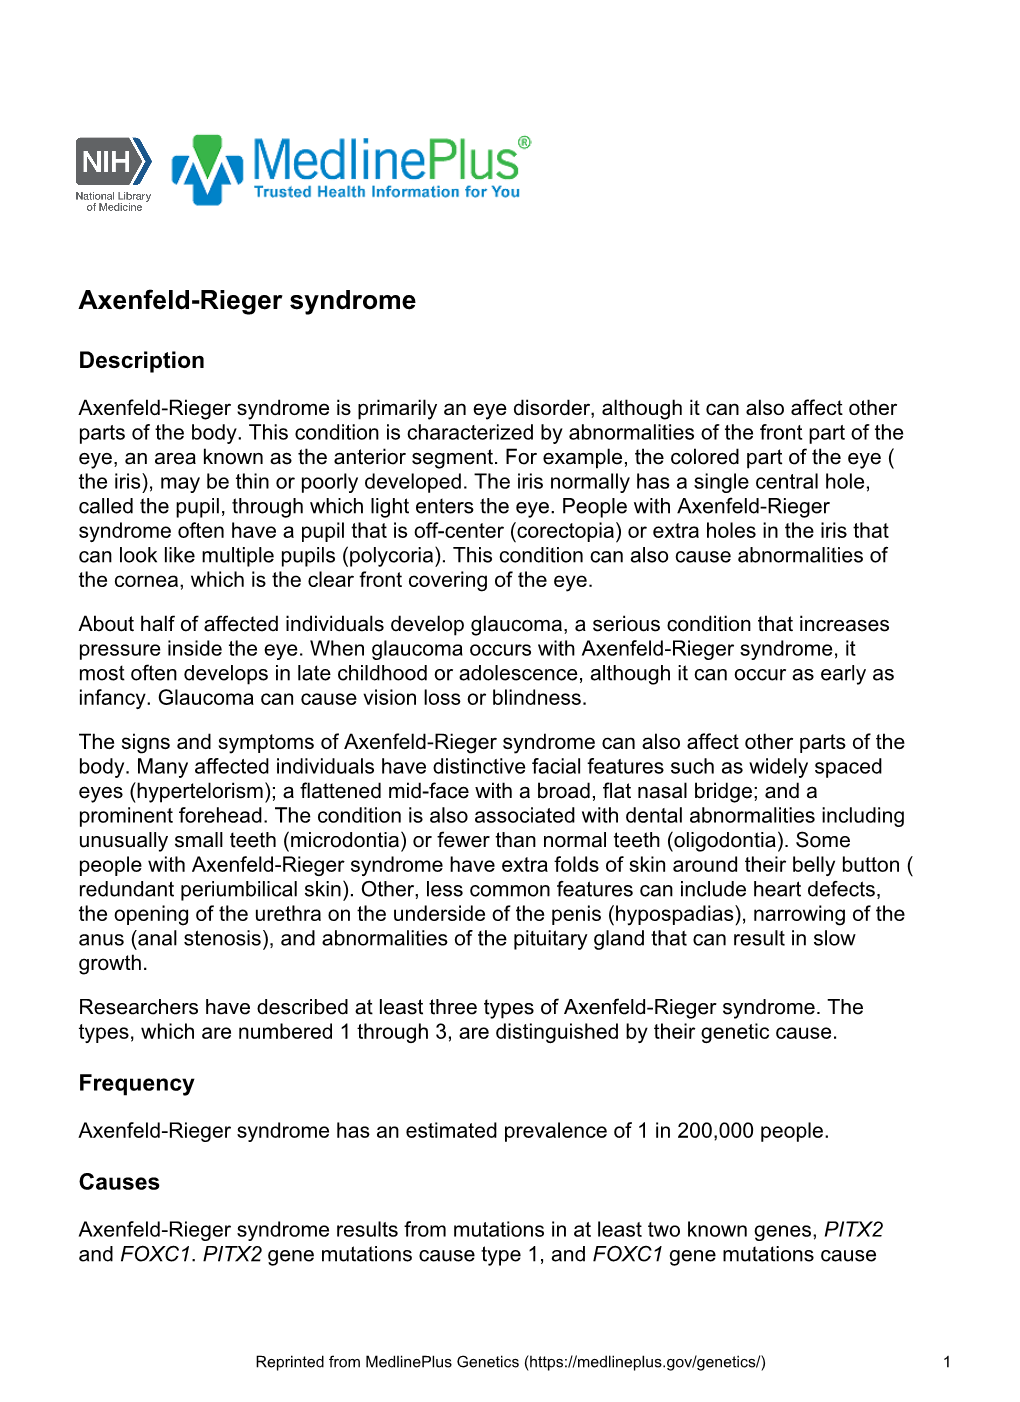 Axenfeld-Rieger Syndrome